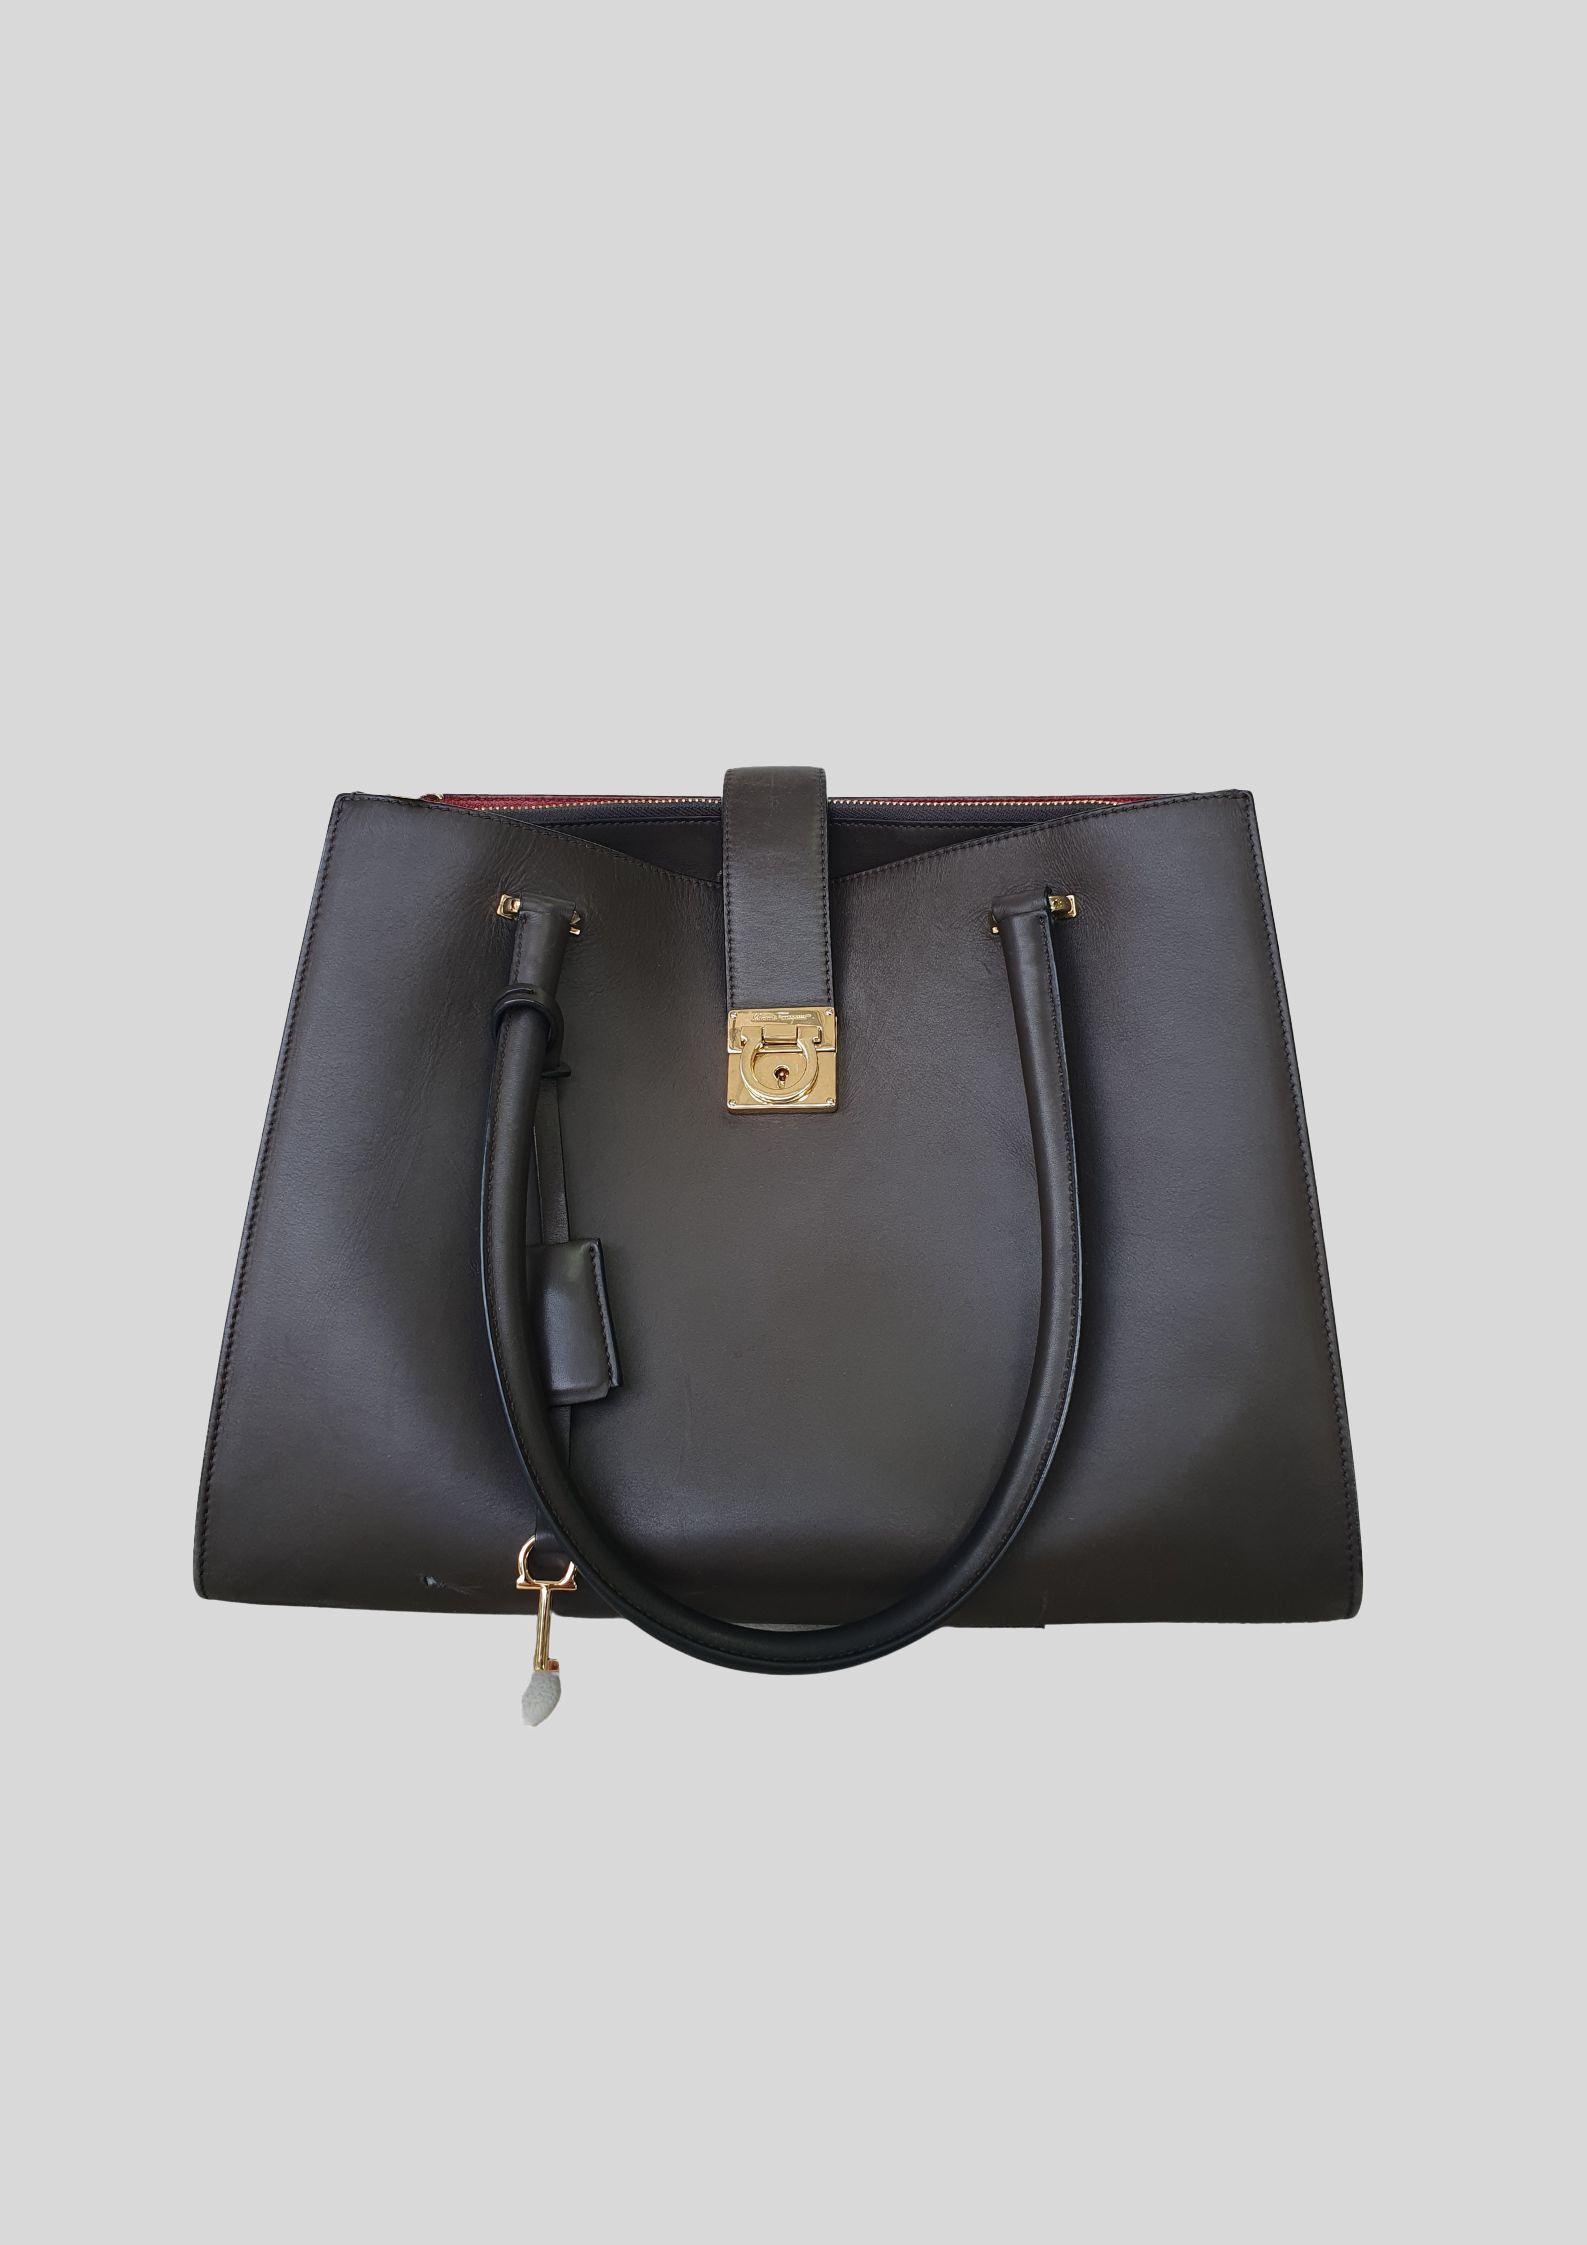 Salvatore Ferragamo - Leather Tote Bag